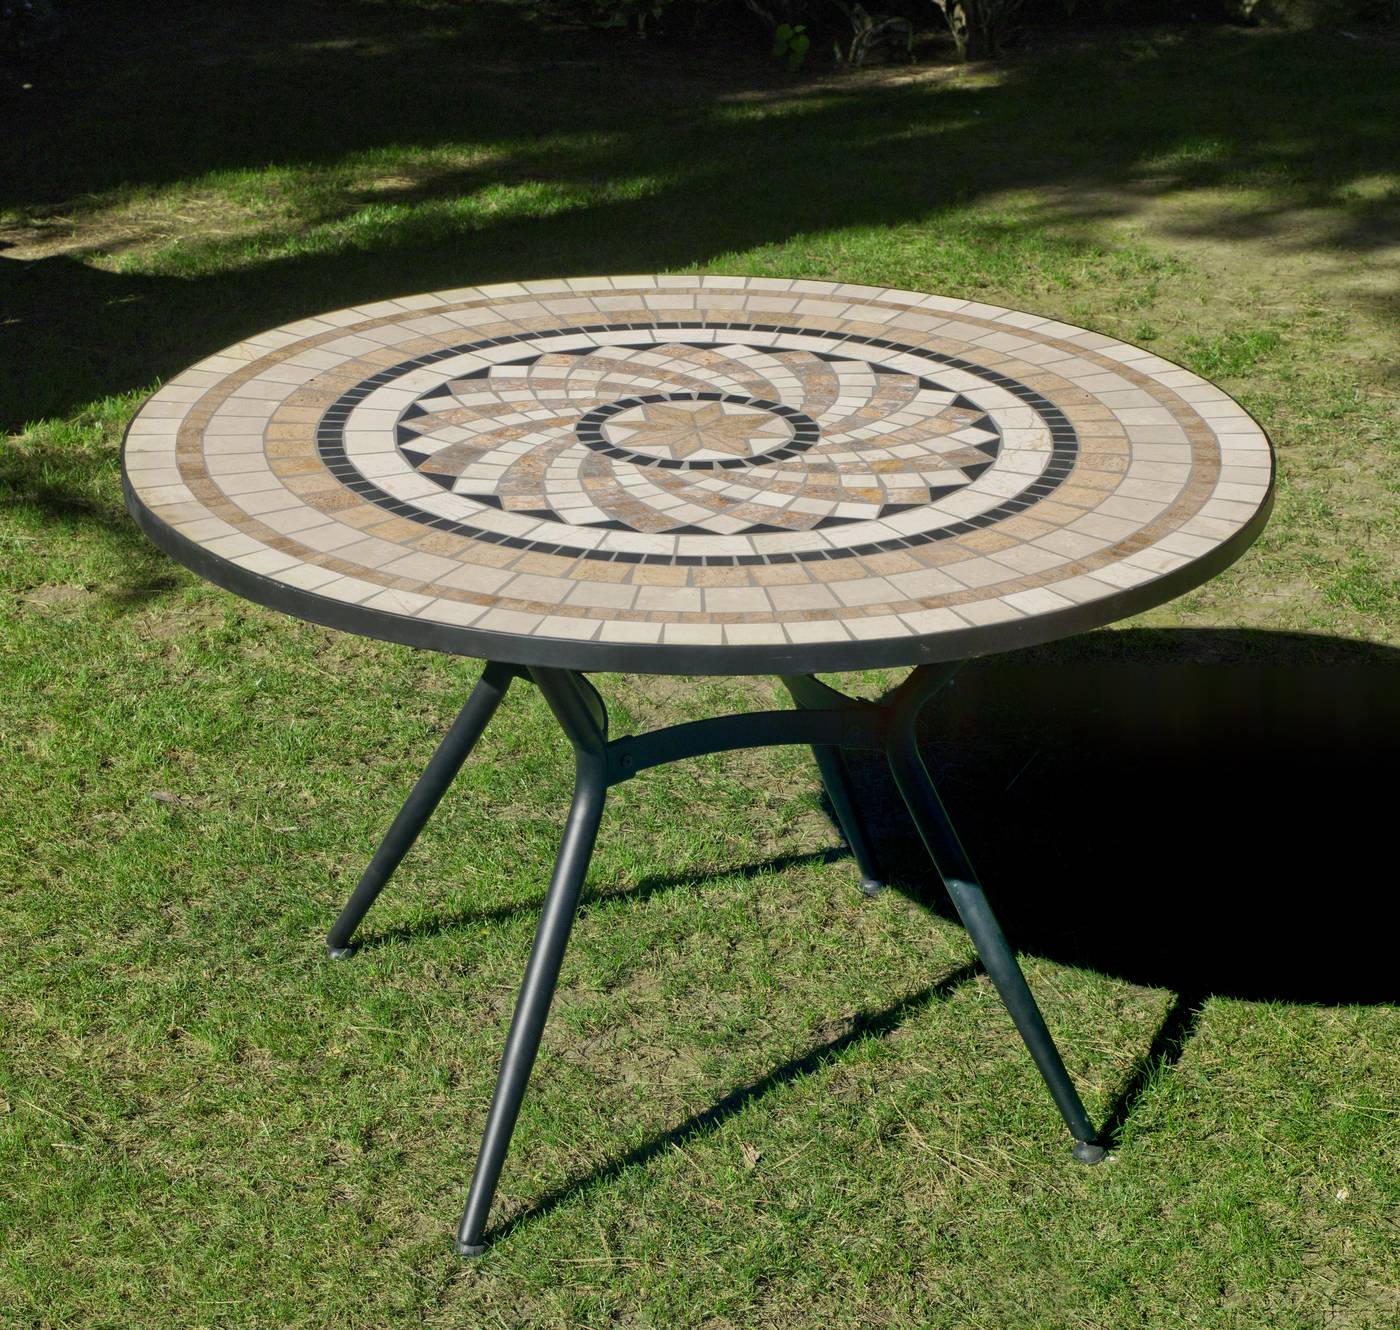 Set Mosaico Shifa-Ampurias 120-6 - Conjunto de forja color gris: 1 mesa redonda con panel mosaico de marmol  + 6 sillones de ratán sintético + 6 cojines.